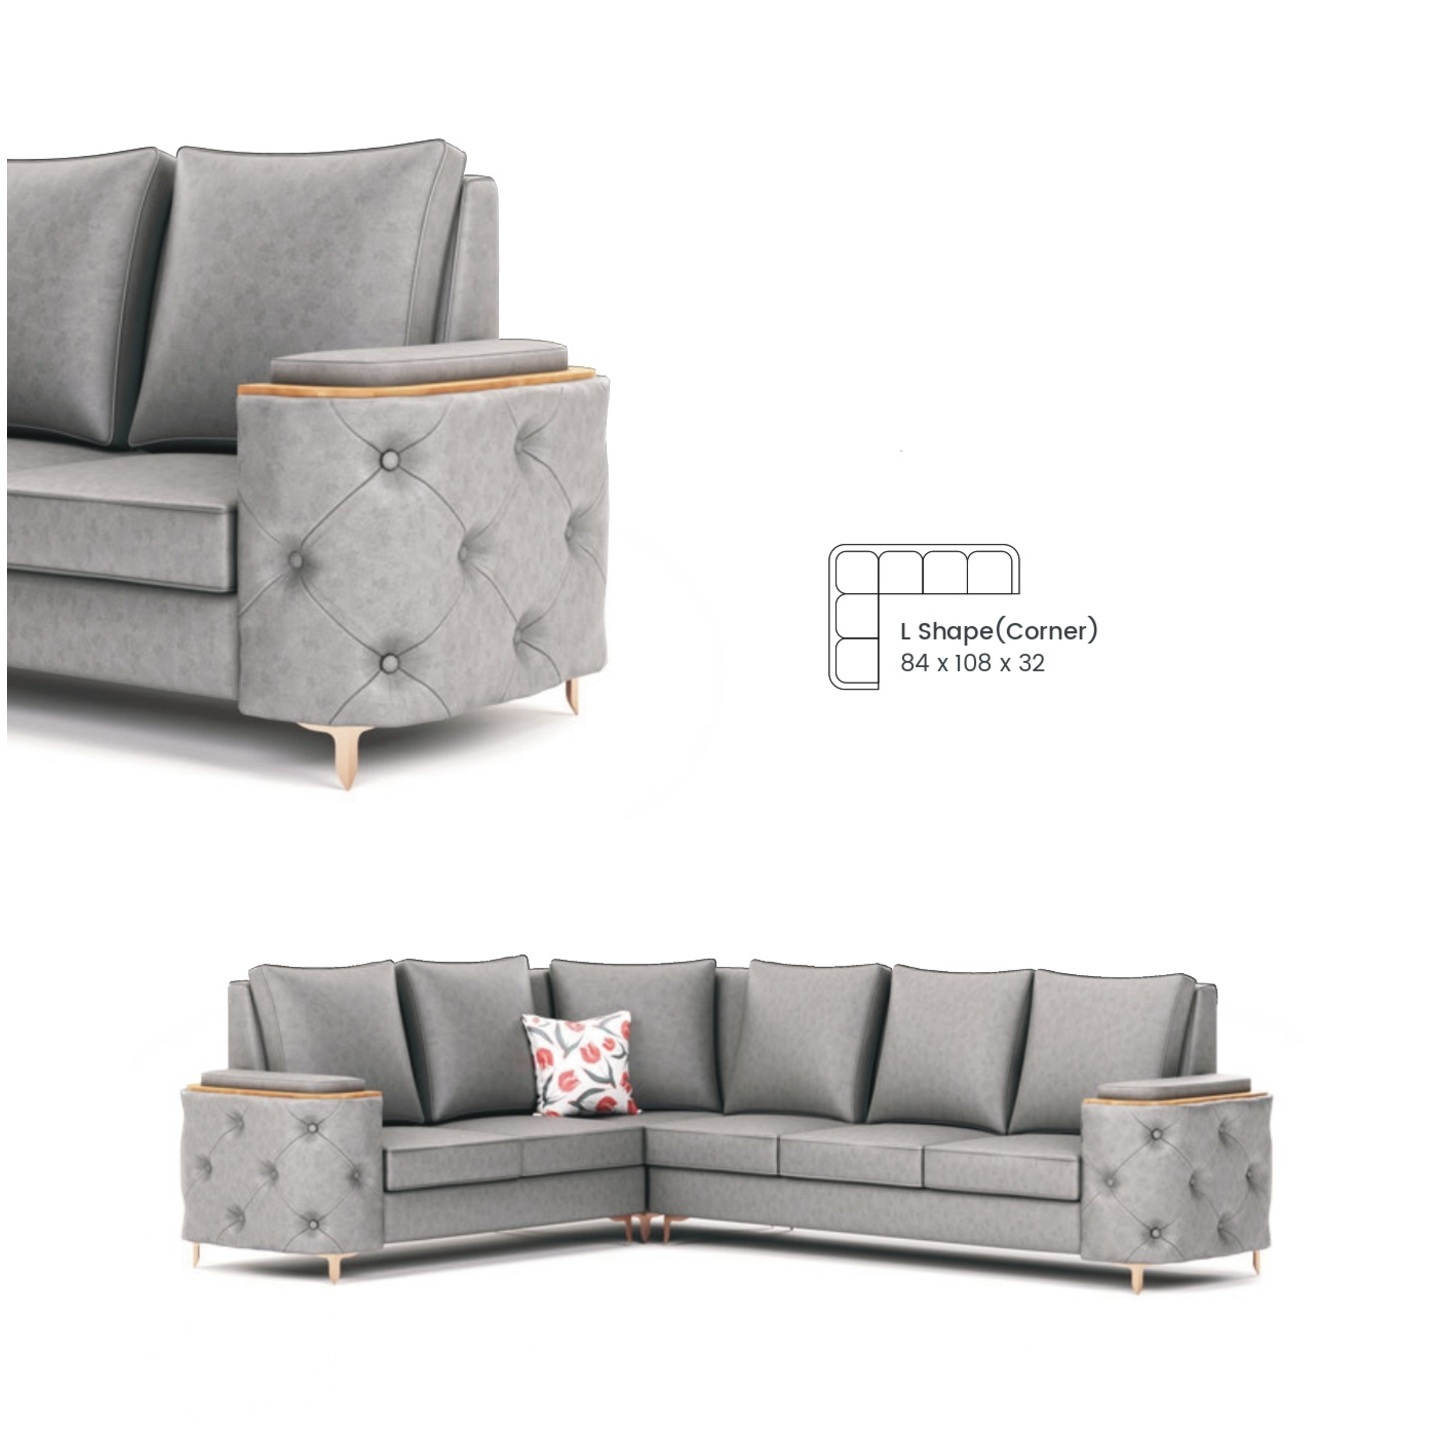 RLF Corner Sofa Set DD-502 In Grey Colour